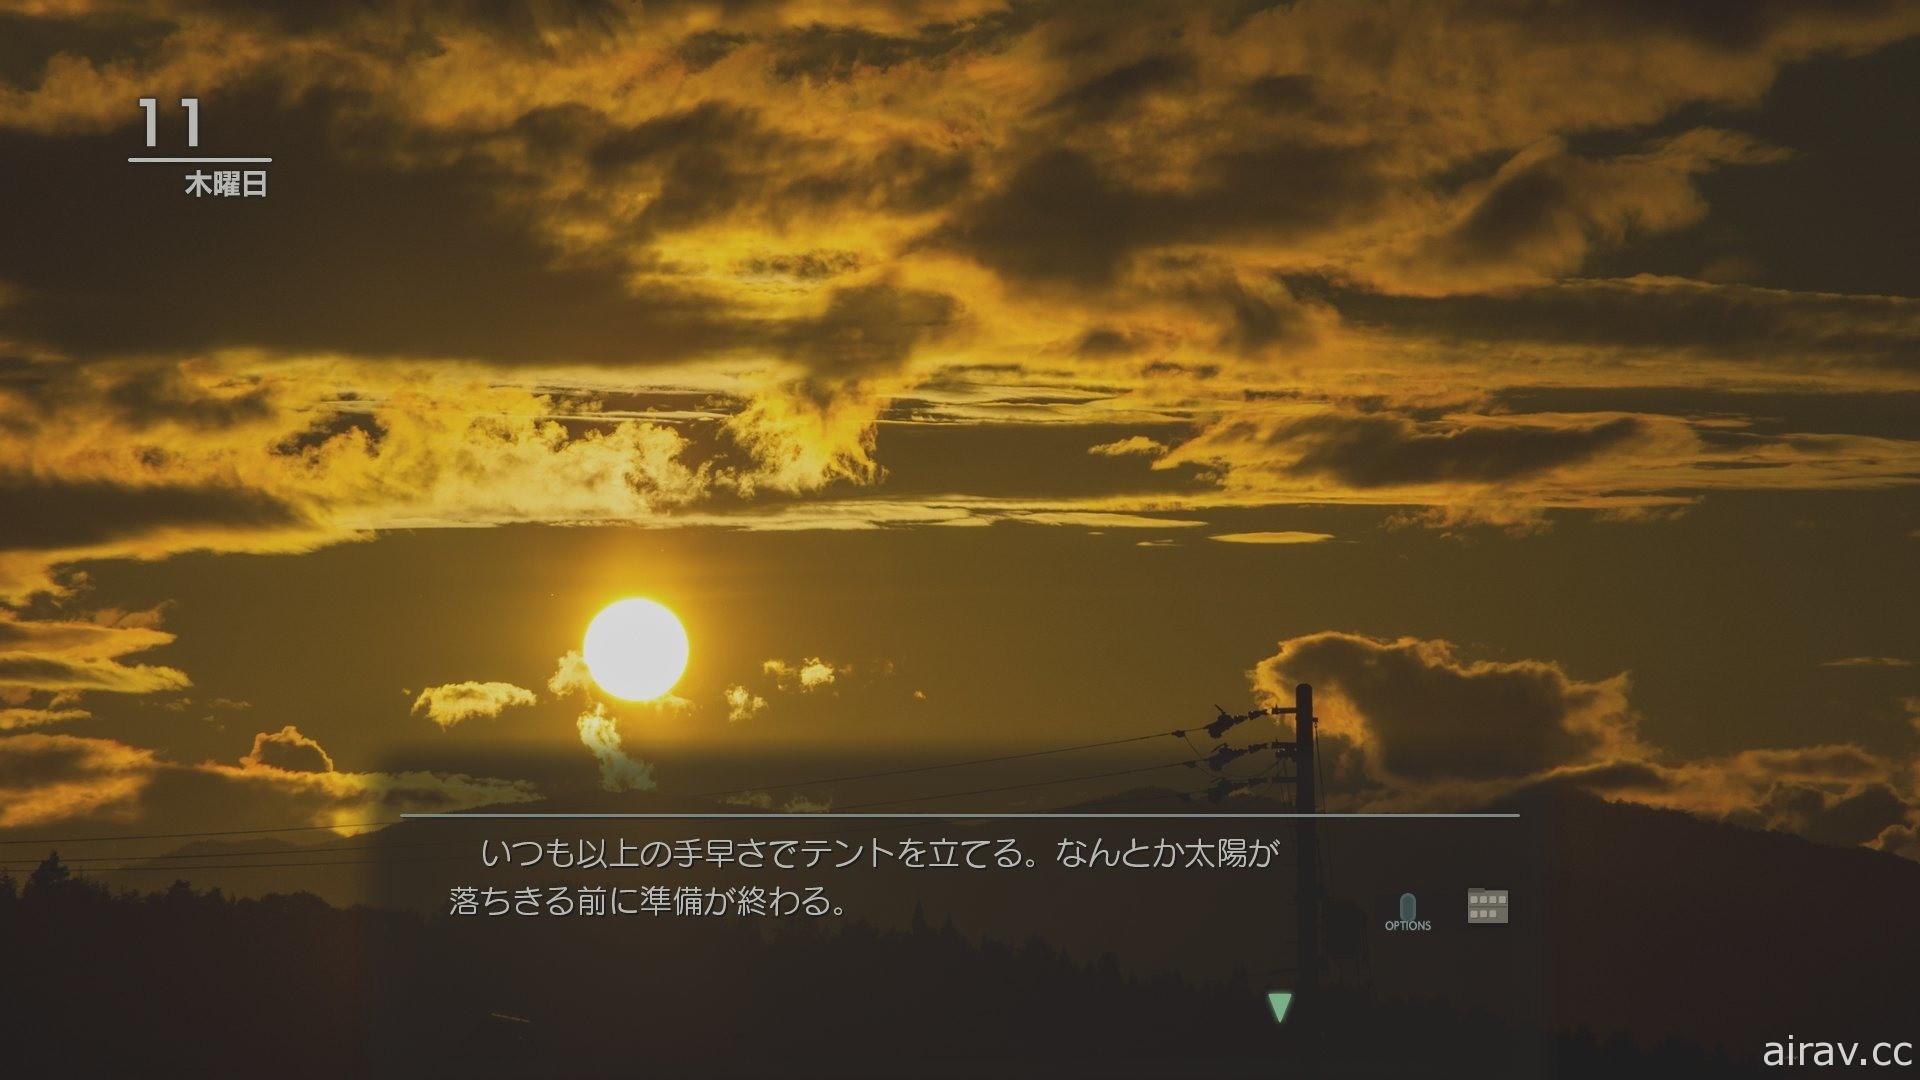 【試玩】《風雨來記 4》透過 360 度環景呈現騎乘光景 體驗 「日本中心」 岐阜的魅力